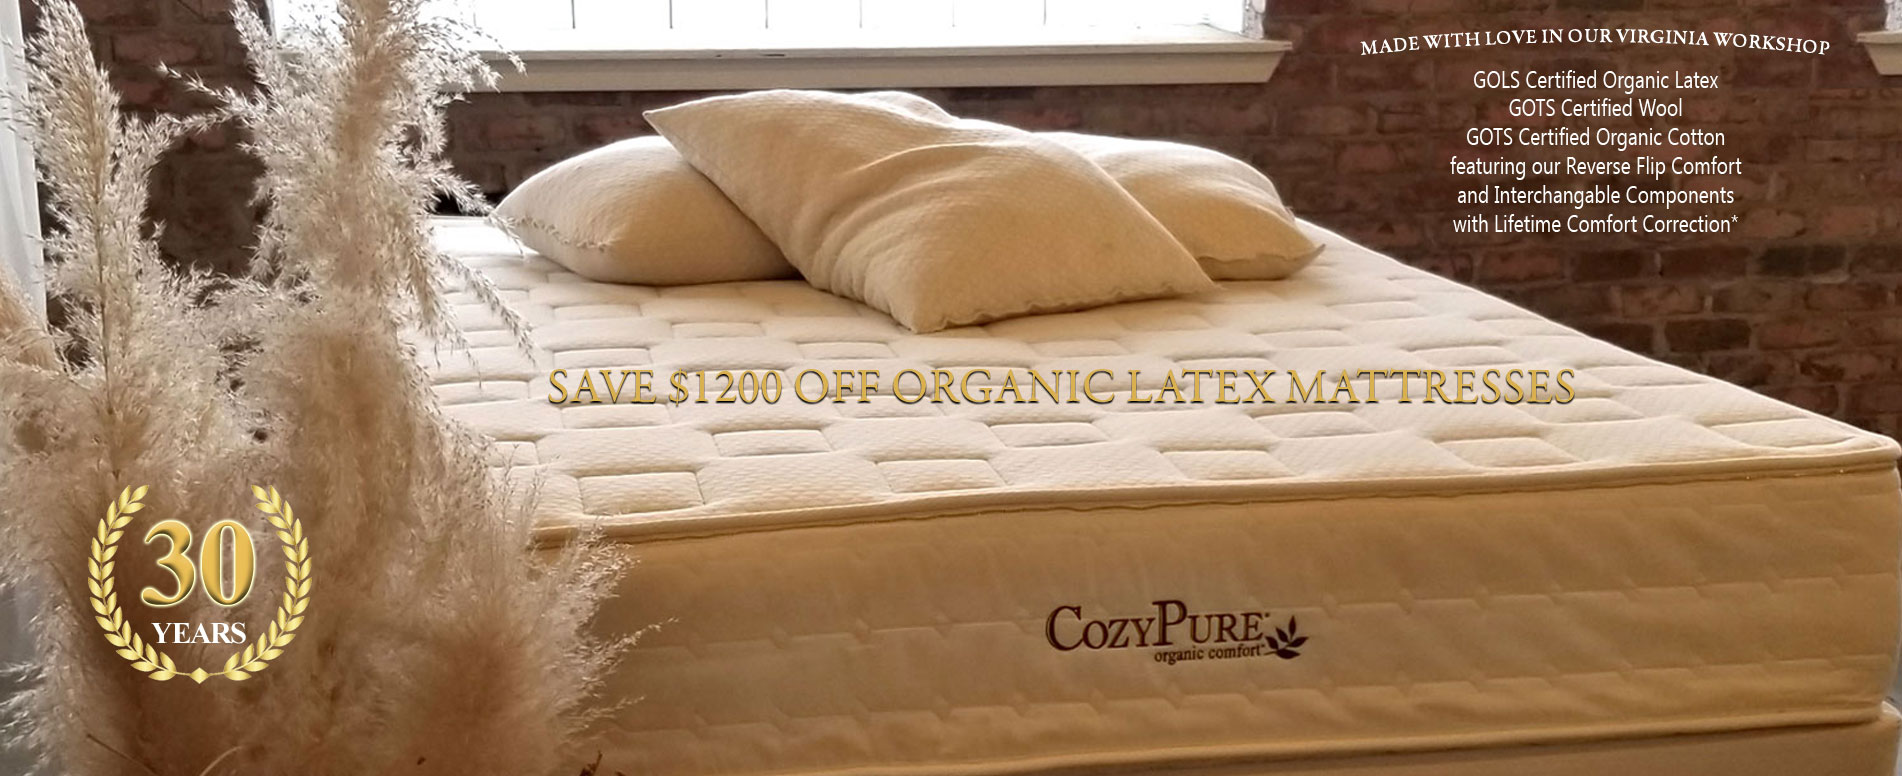 cozypure organic comfort made fresh daily